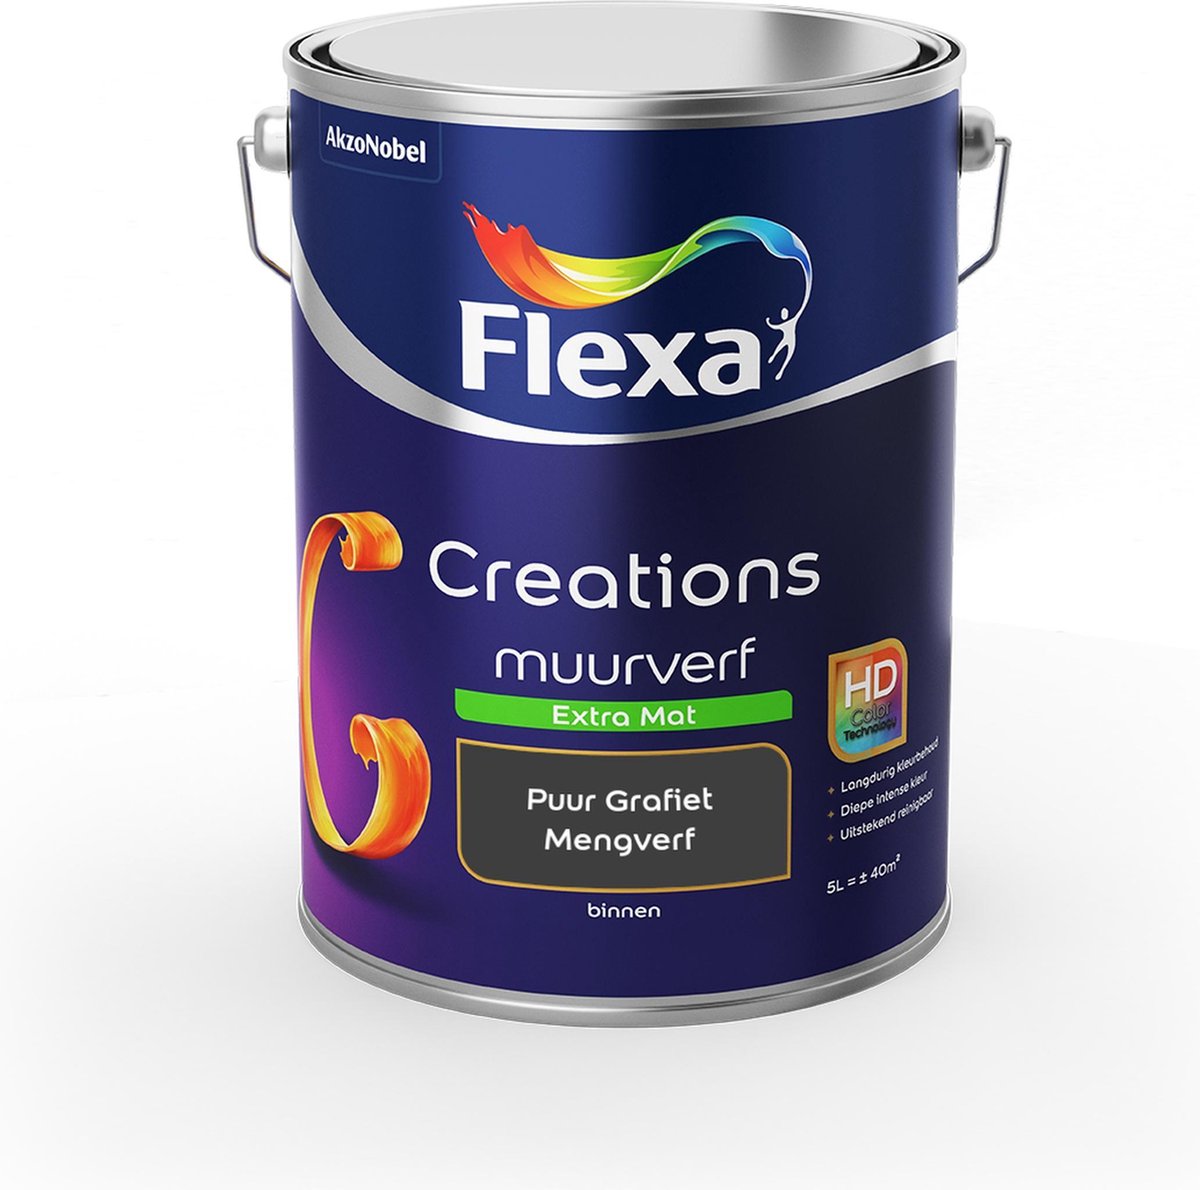 Flexa Creations Muurverf - Extra Mat - Mengkleuren Collectie -Puur Grafiet - 5 liter